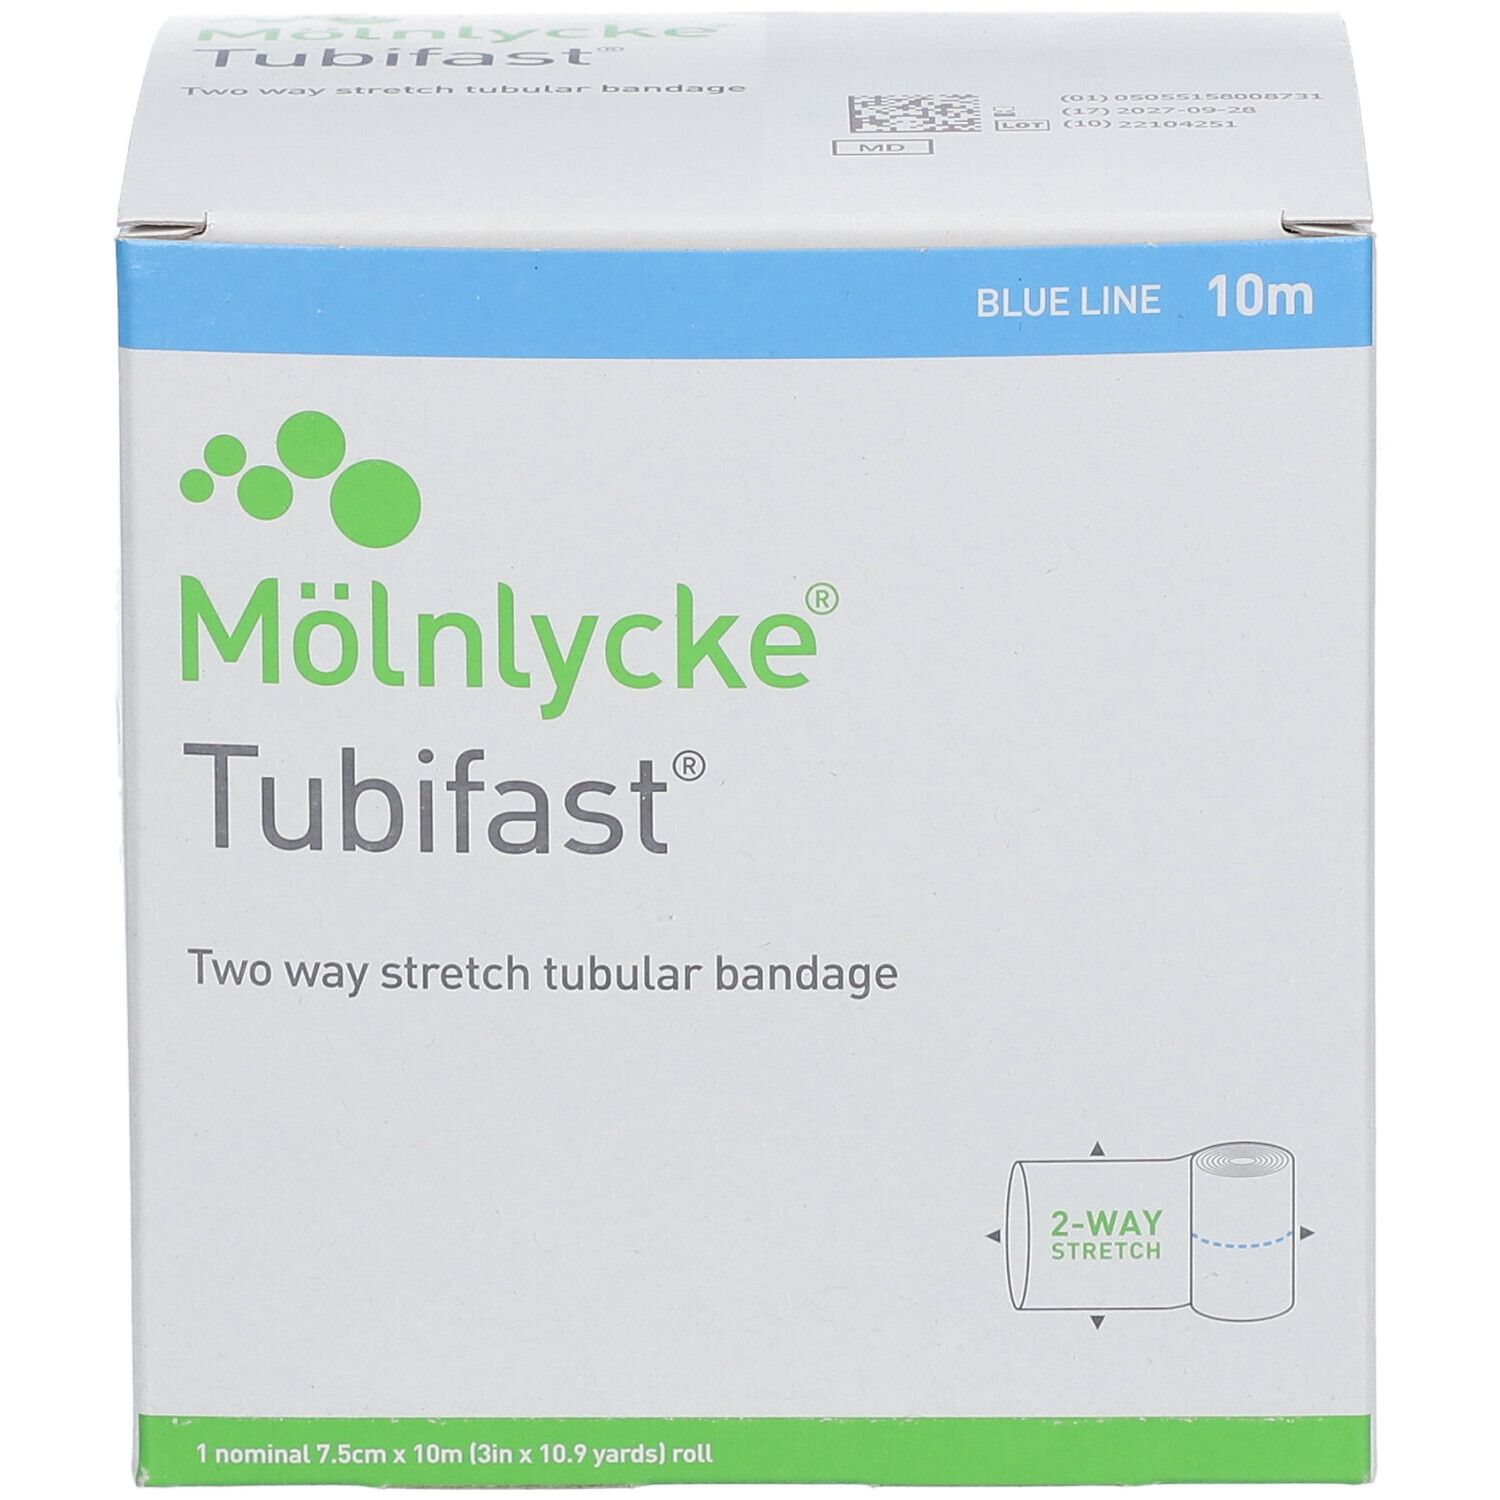 Tubifast - Bandage tubulaire léger pour fixation et/ou protection